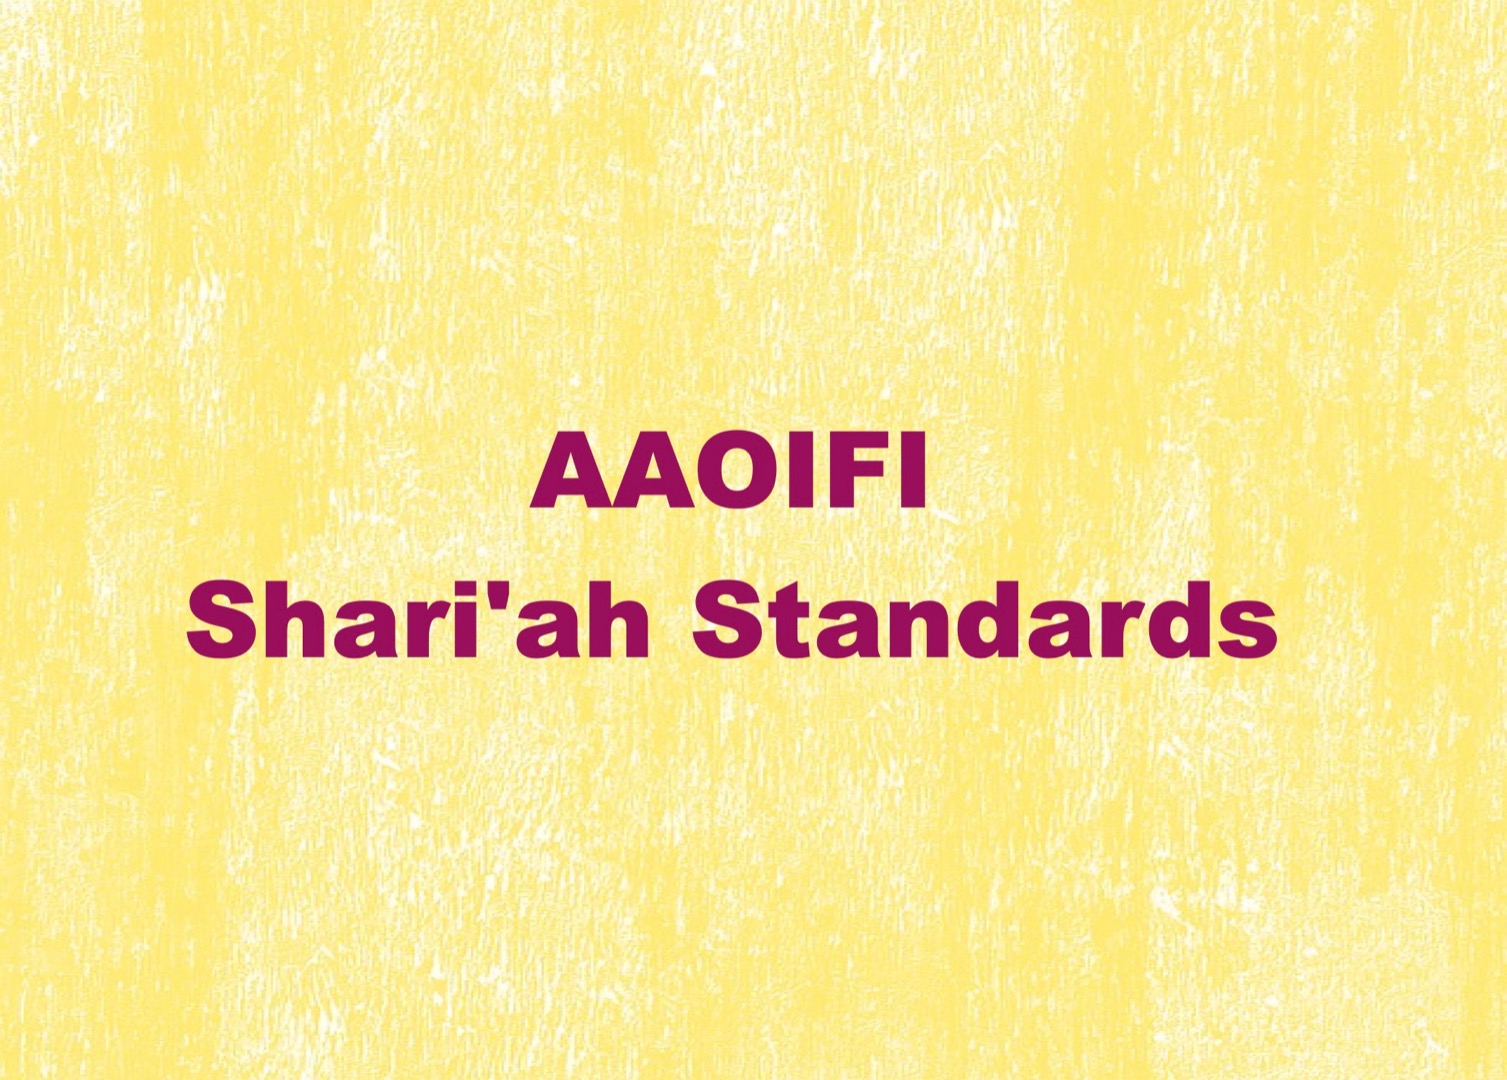 AAOIFI Shari'ah Standard # 15: Ju’alah